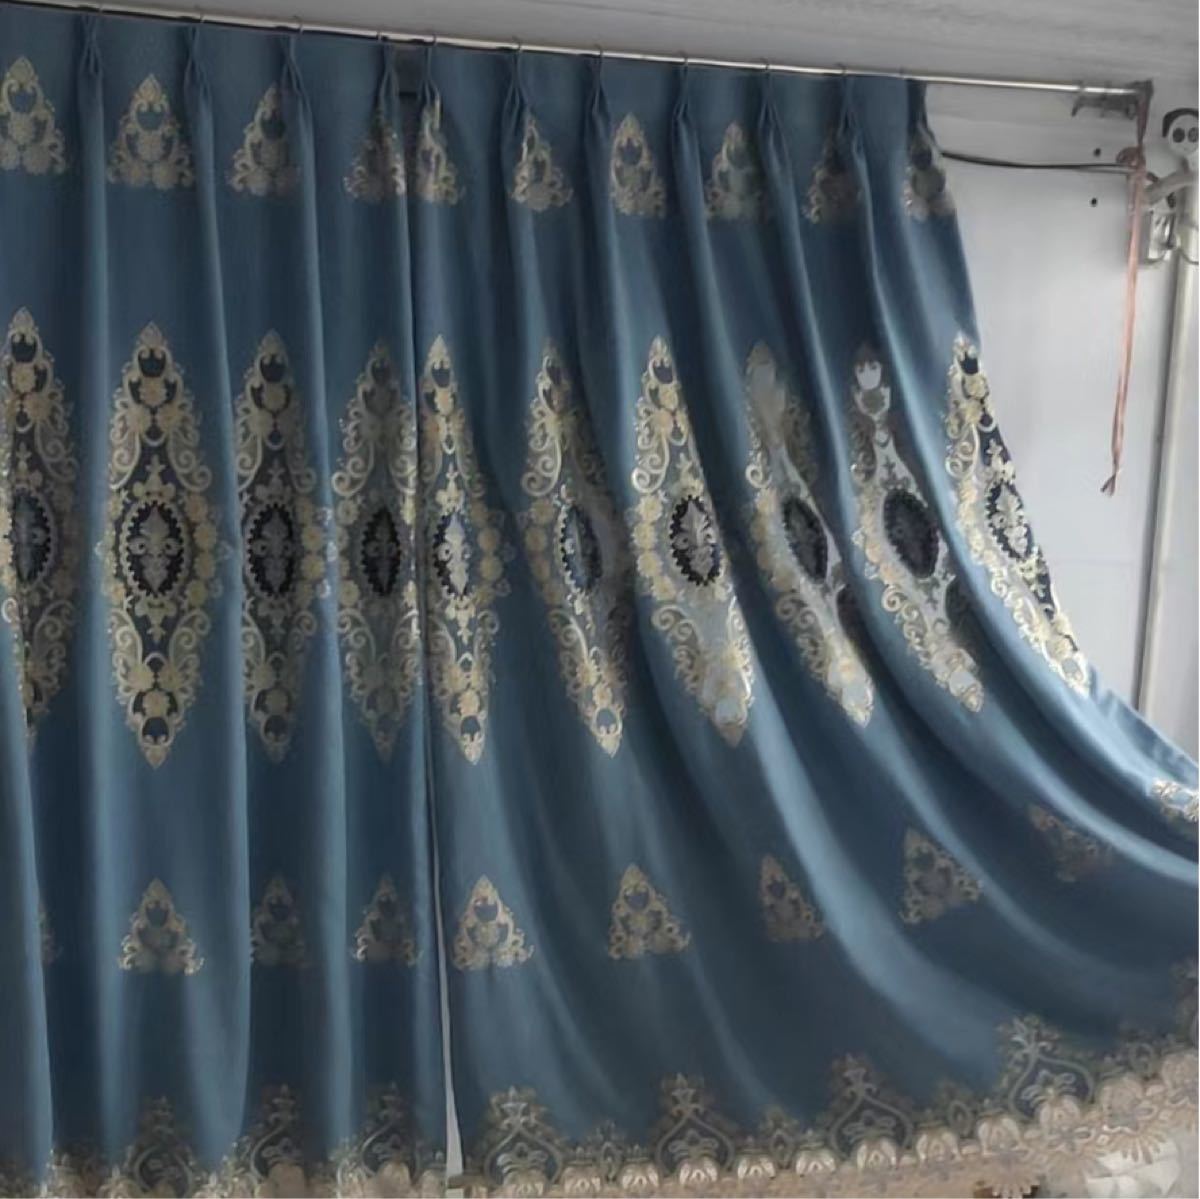 ドレープカーテン オーダーサイズ ブルー おしゃれ 刺繍 柄 生活雑貨 新居 花柄 カーテン幅 ボイルカーテン 遮光 遮光カーテン